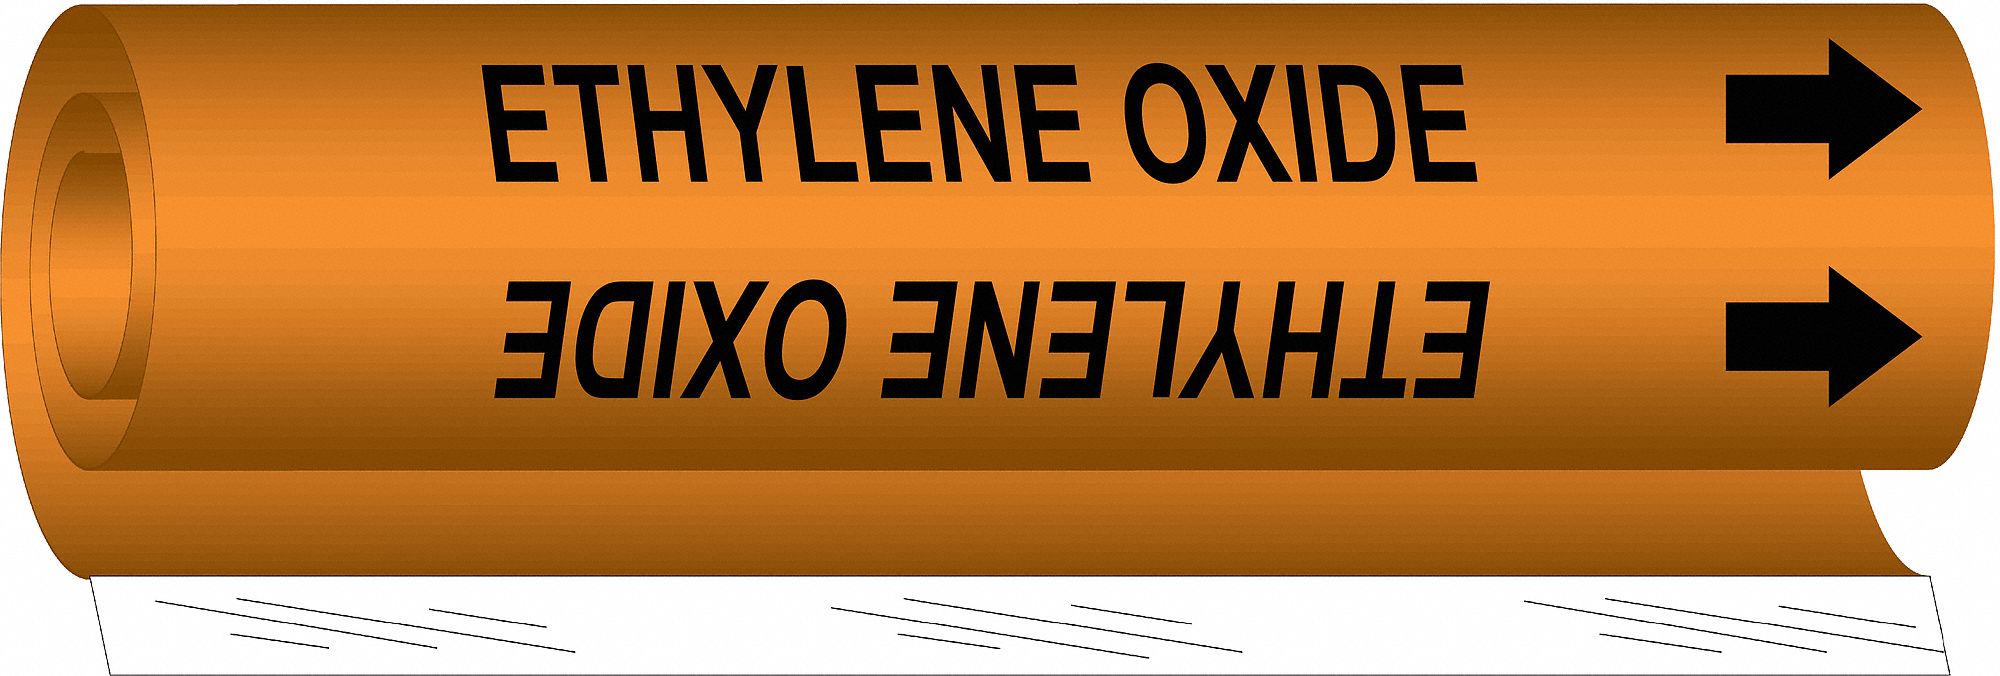 Pipe Marker,Ethylene Oxide